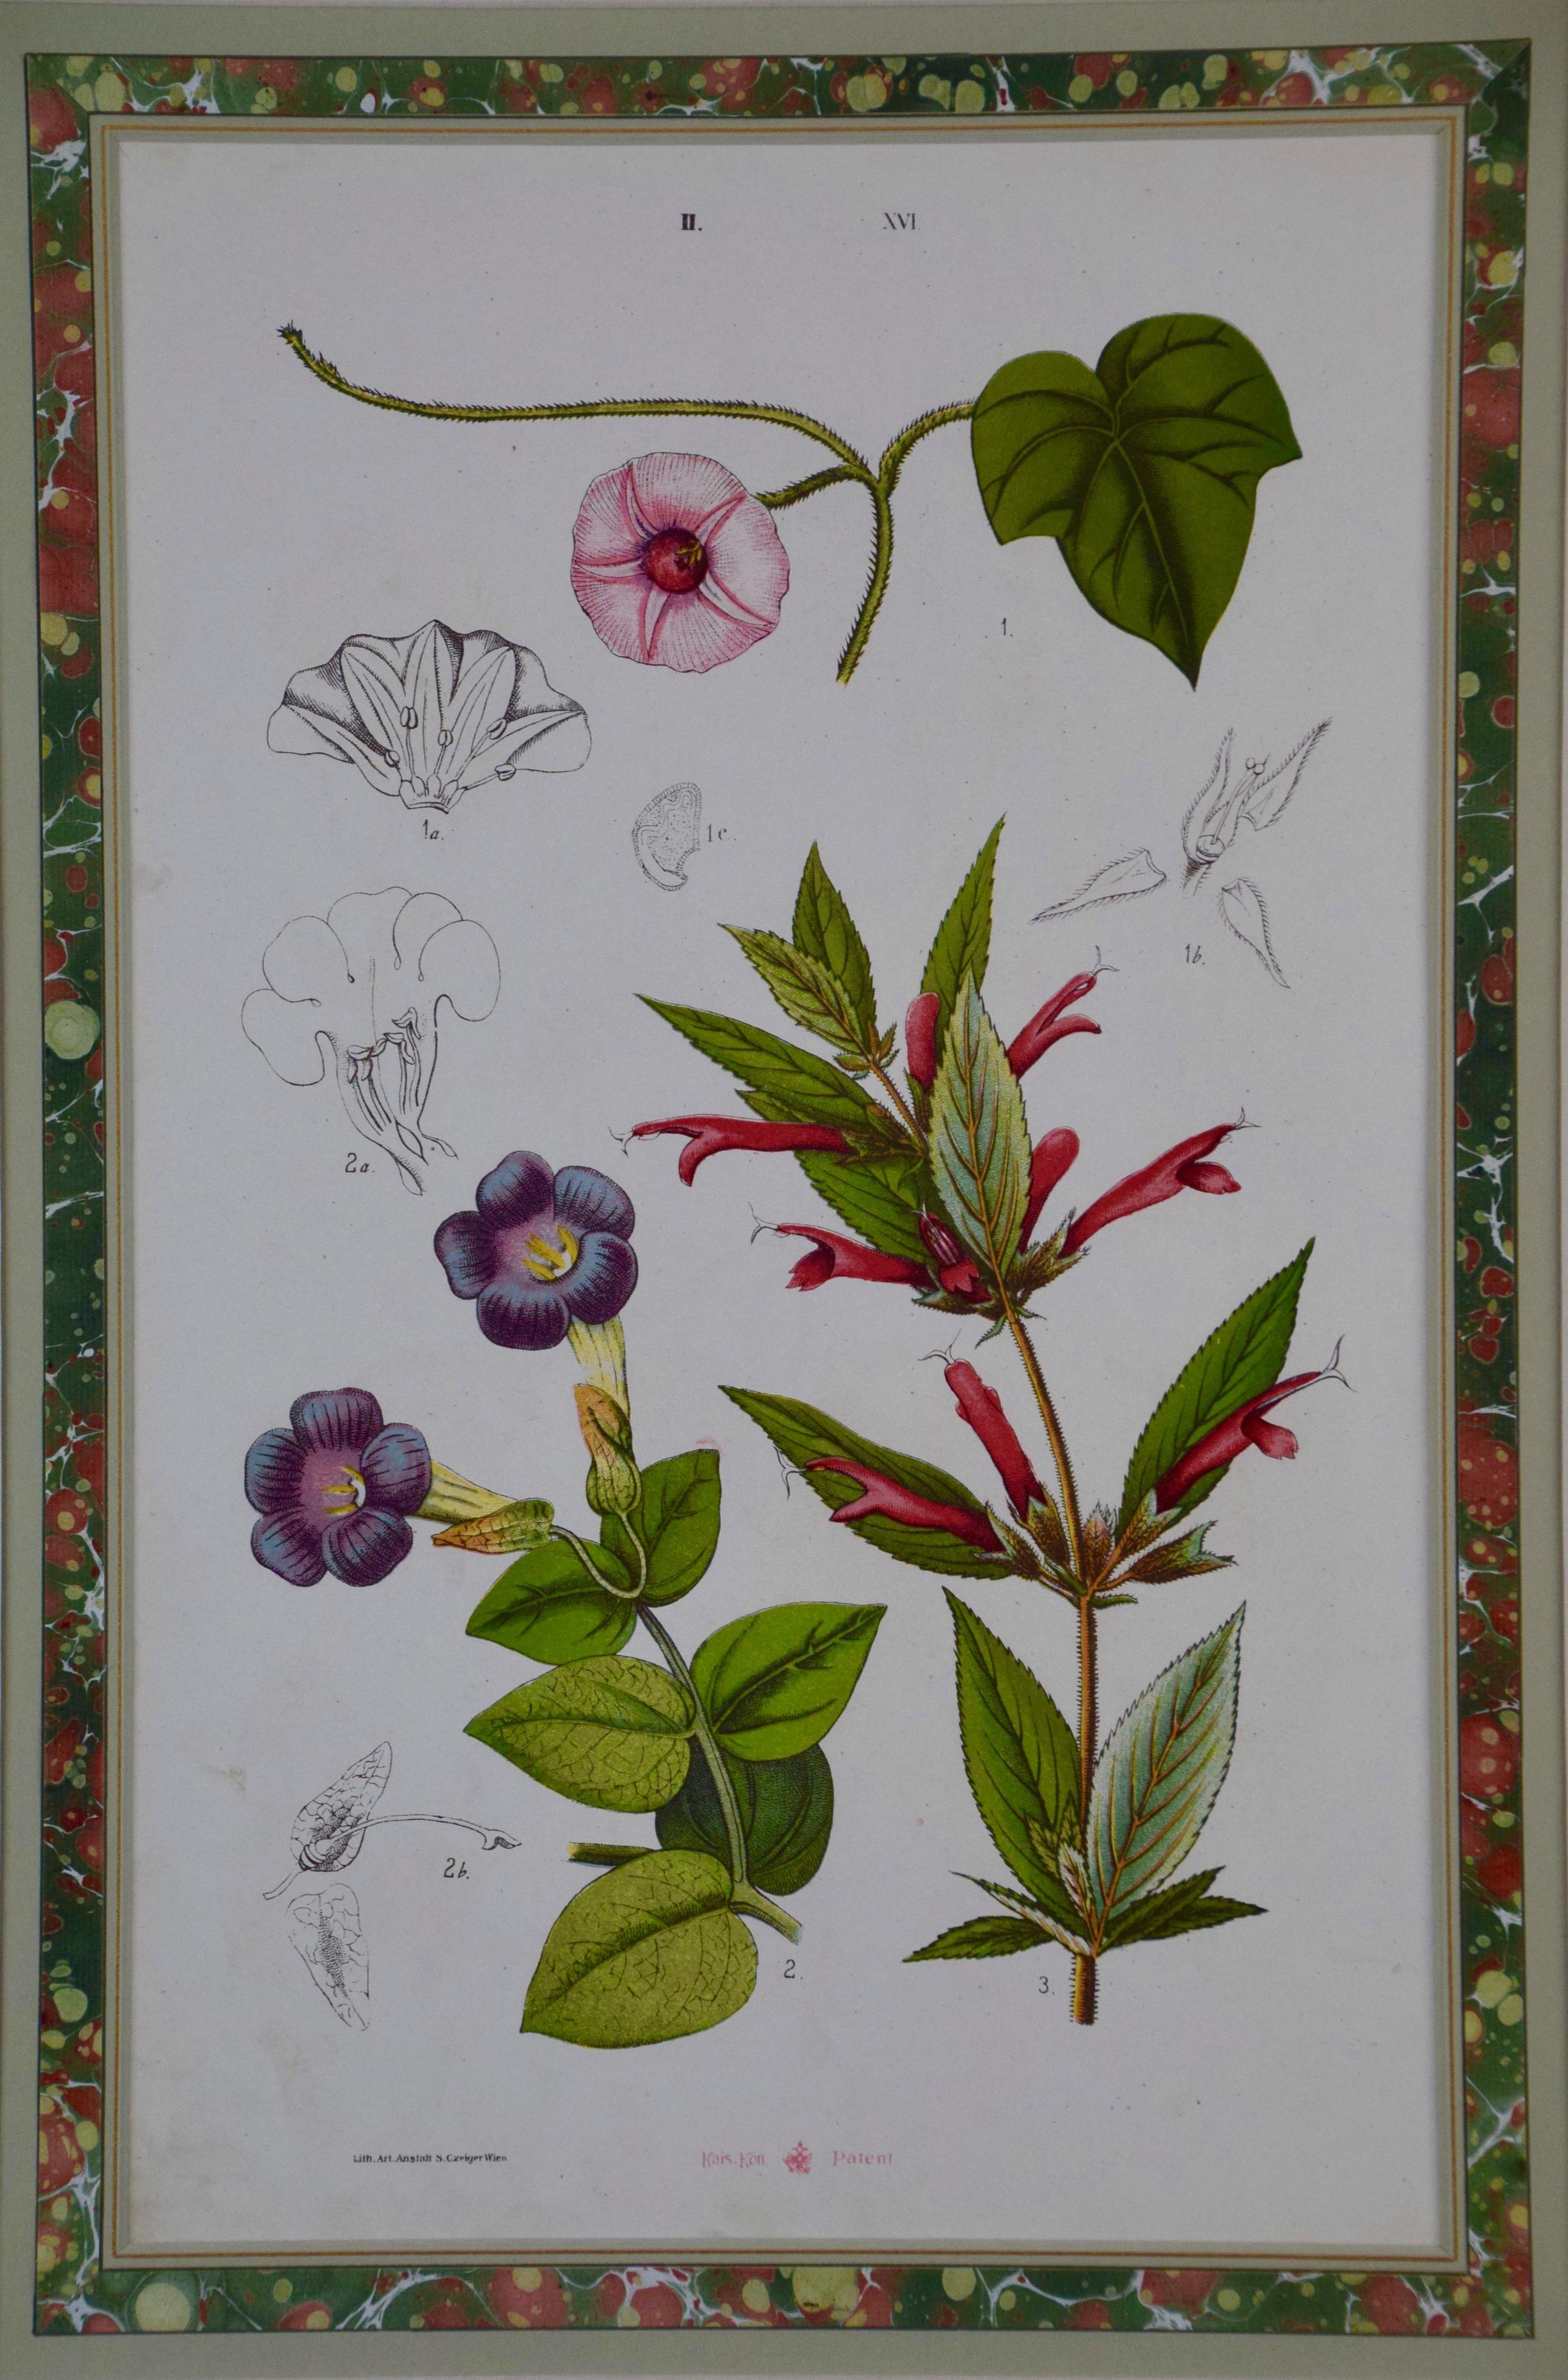 Une gravure botanique colorée de fleurs du XIXe siècle par Czeiger - Print de S. Czeiger 